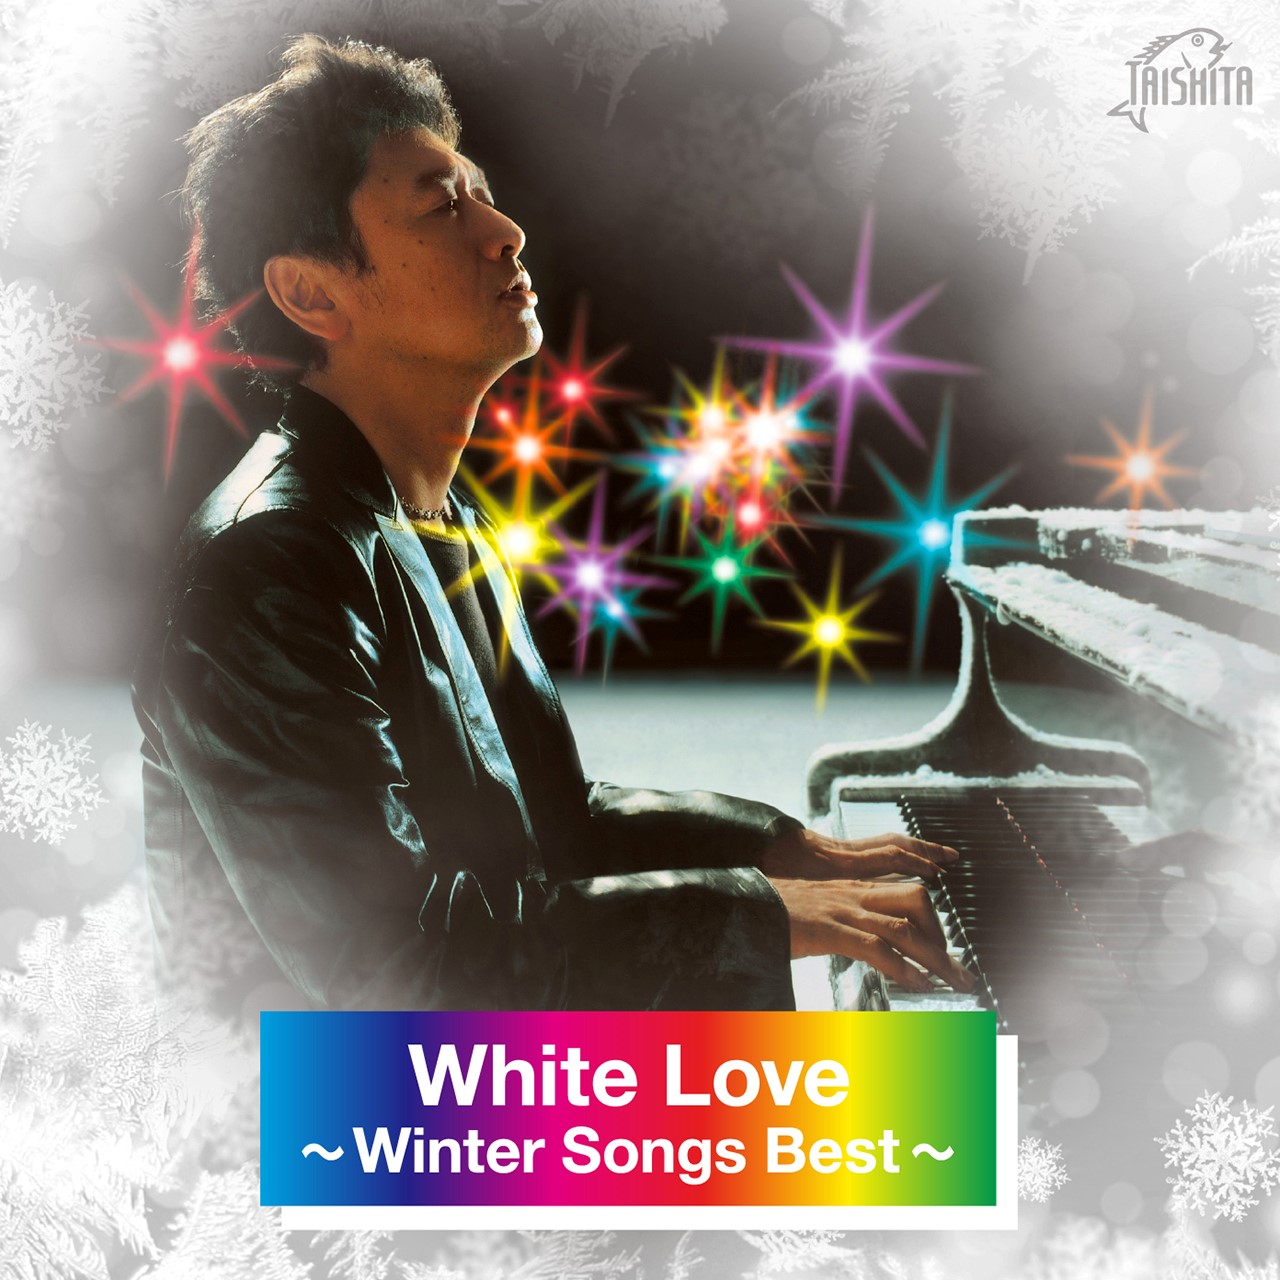 White love 〜Winter Songs Best〜